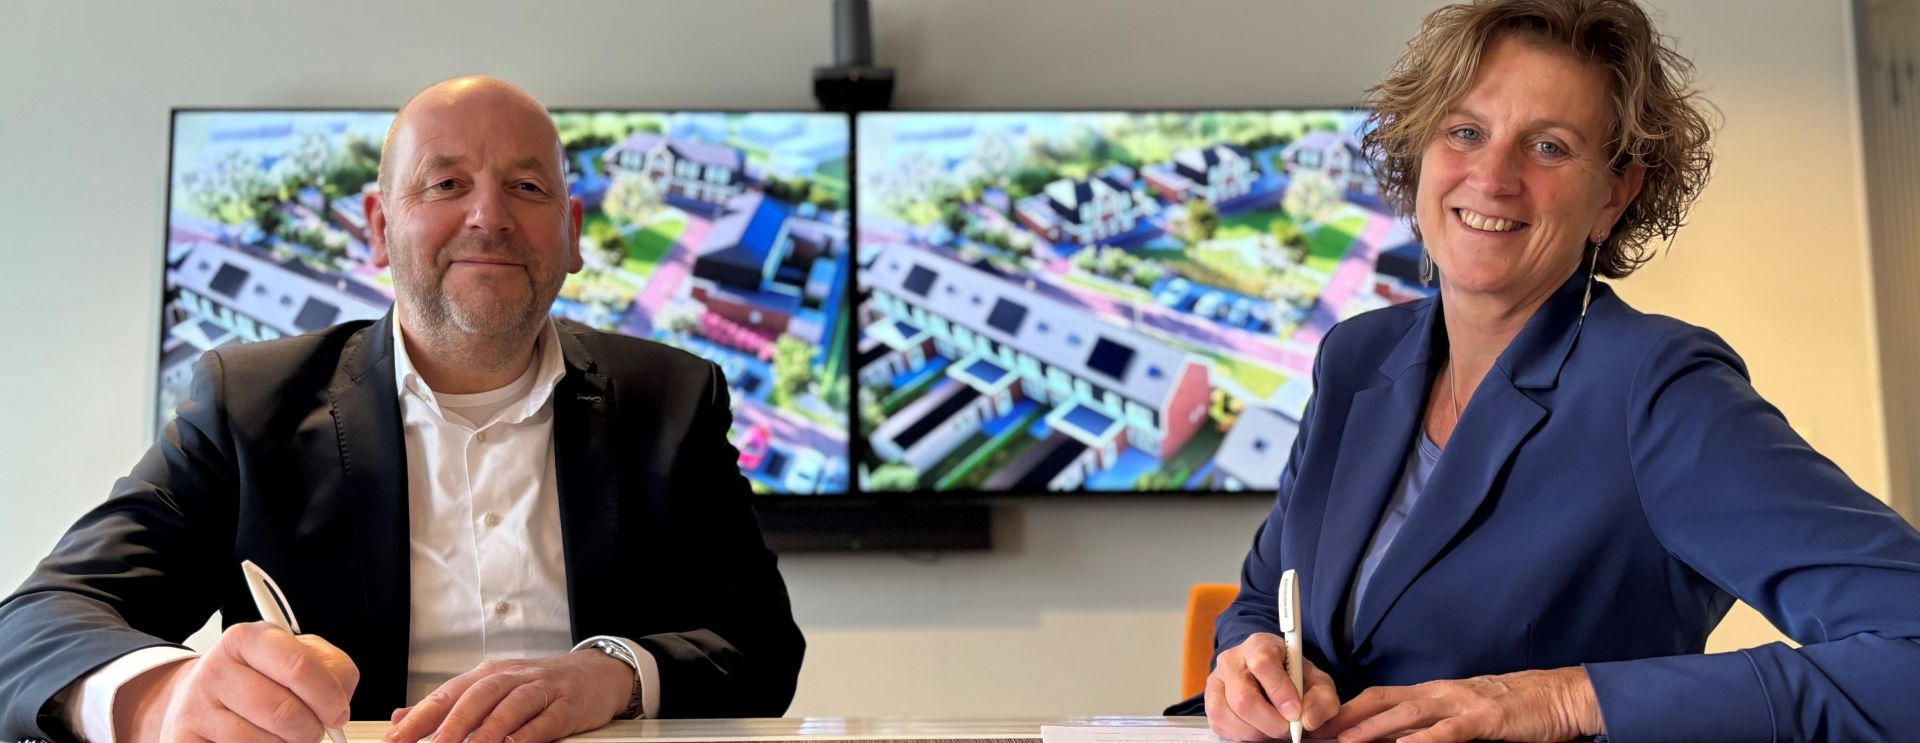 Woonservice en Ter Steege Bouw Vastgoed Hardenberg gaan bouwen: 23 nieuwe woningen in de Acacialaan in Beilen